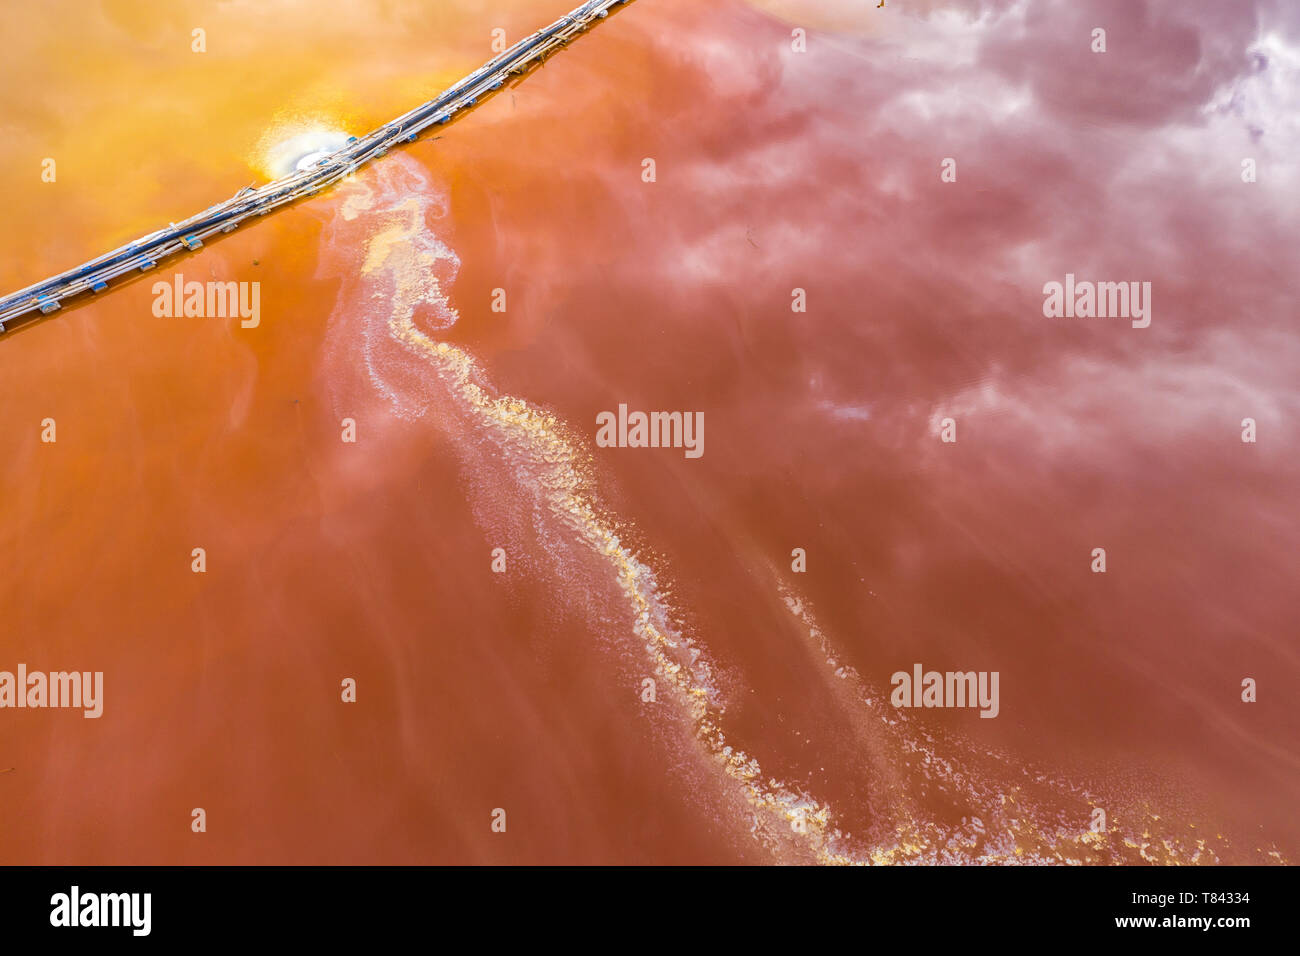 Vue aérienne du drainage minier acide et coloré de l'eau de mine de cuivre rouge inondations l'environnement naturel par drone. Geamana, Rosia Montana, Roumanie Banque D'Images